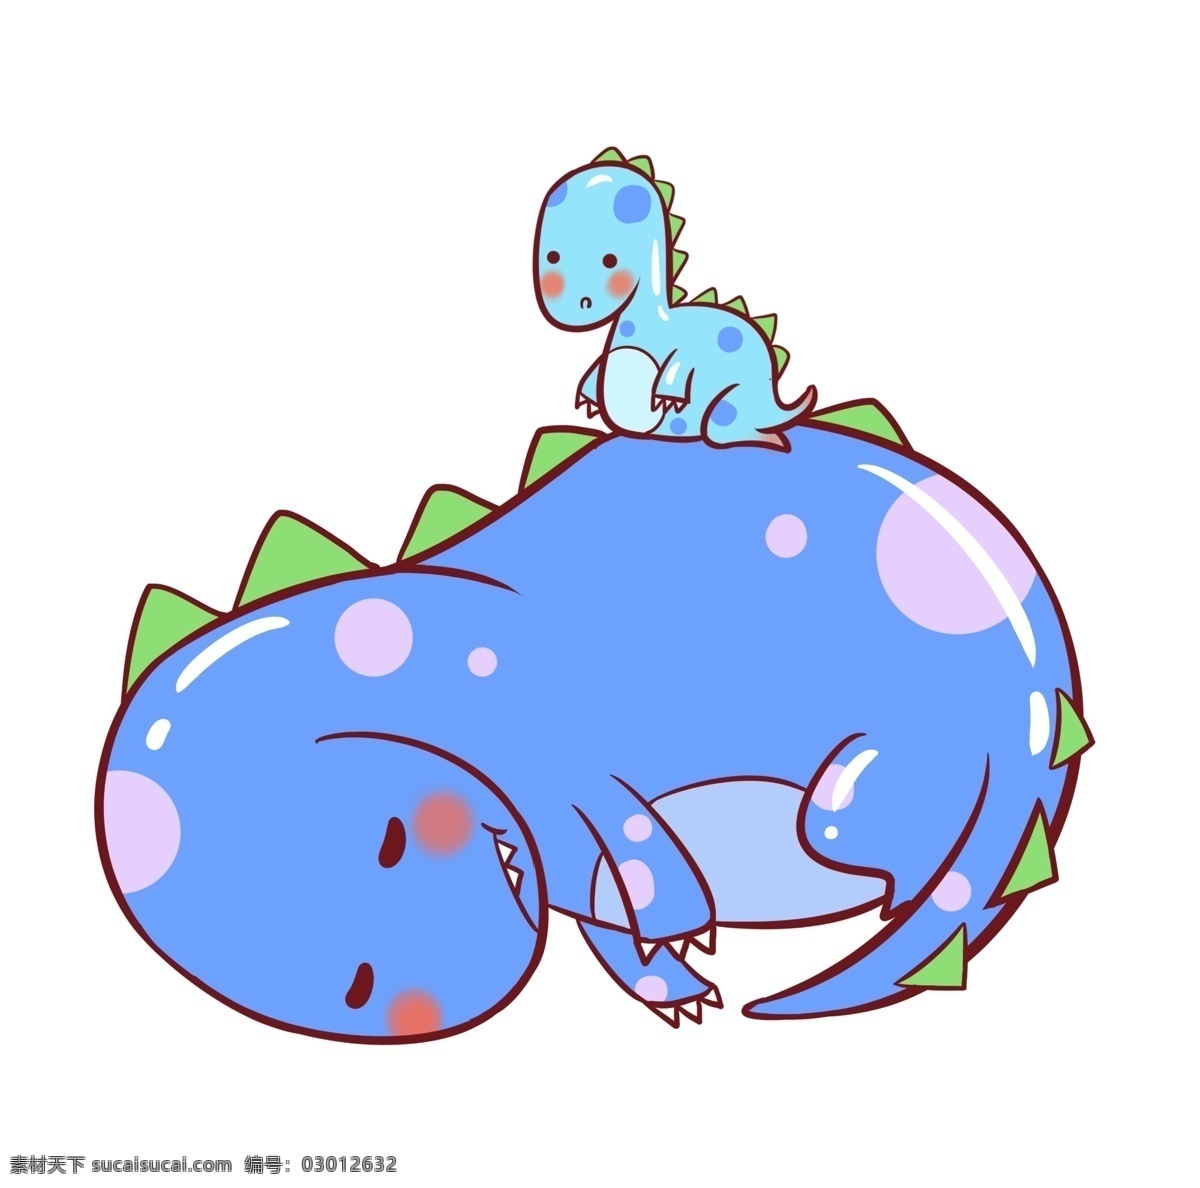 可爱 紫色 恐龙 插画 紫色恐龙 可爱的恐龙 小恐龙 睡觉的恐龙 霸王龙 卡通恐龙插画